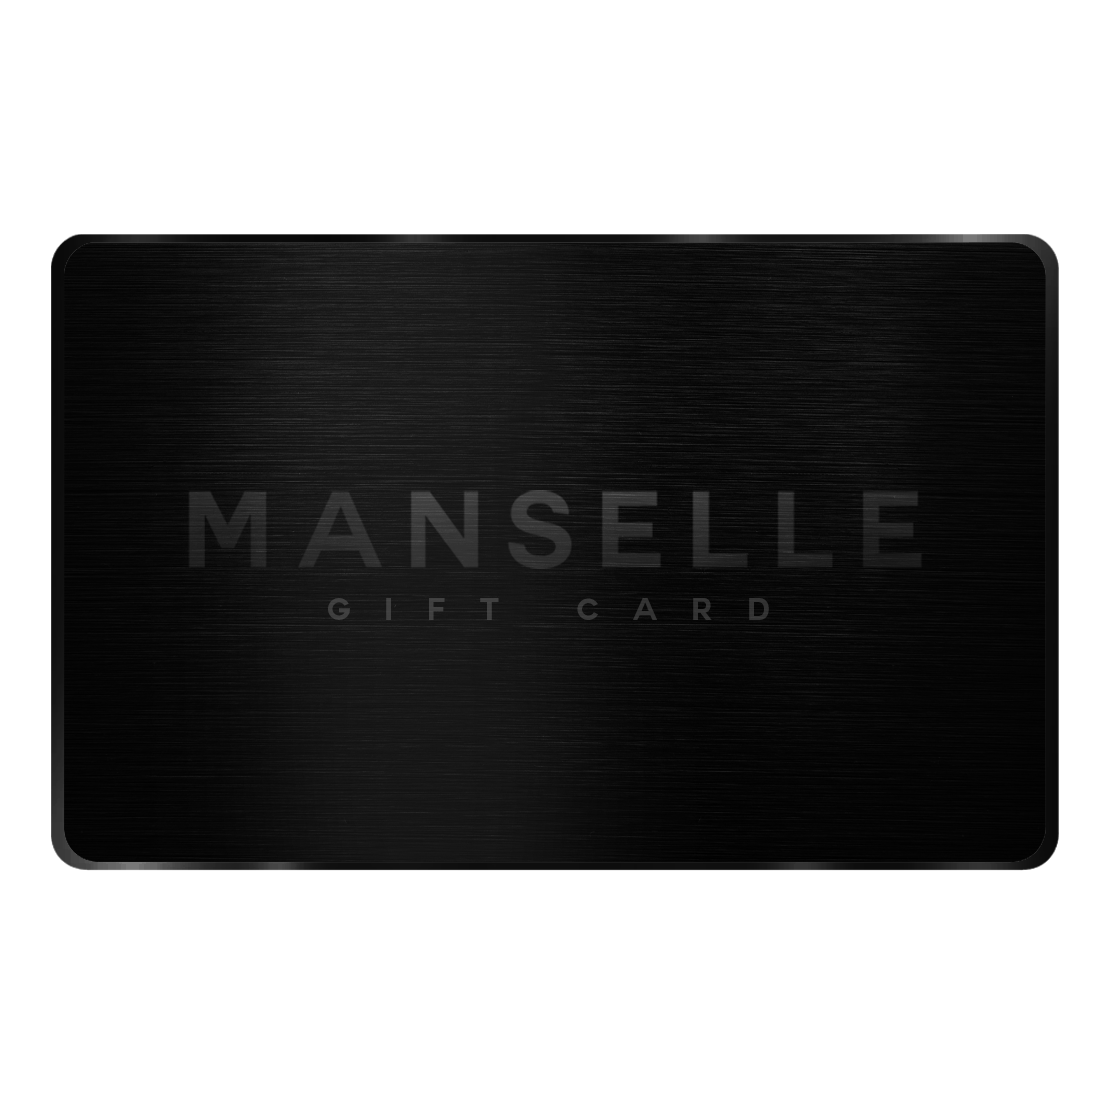 MANSELLE GIFT CARD